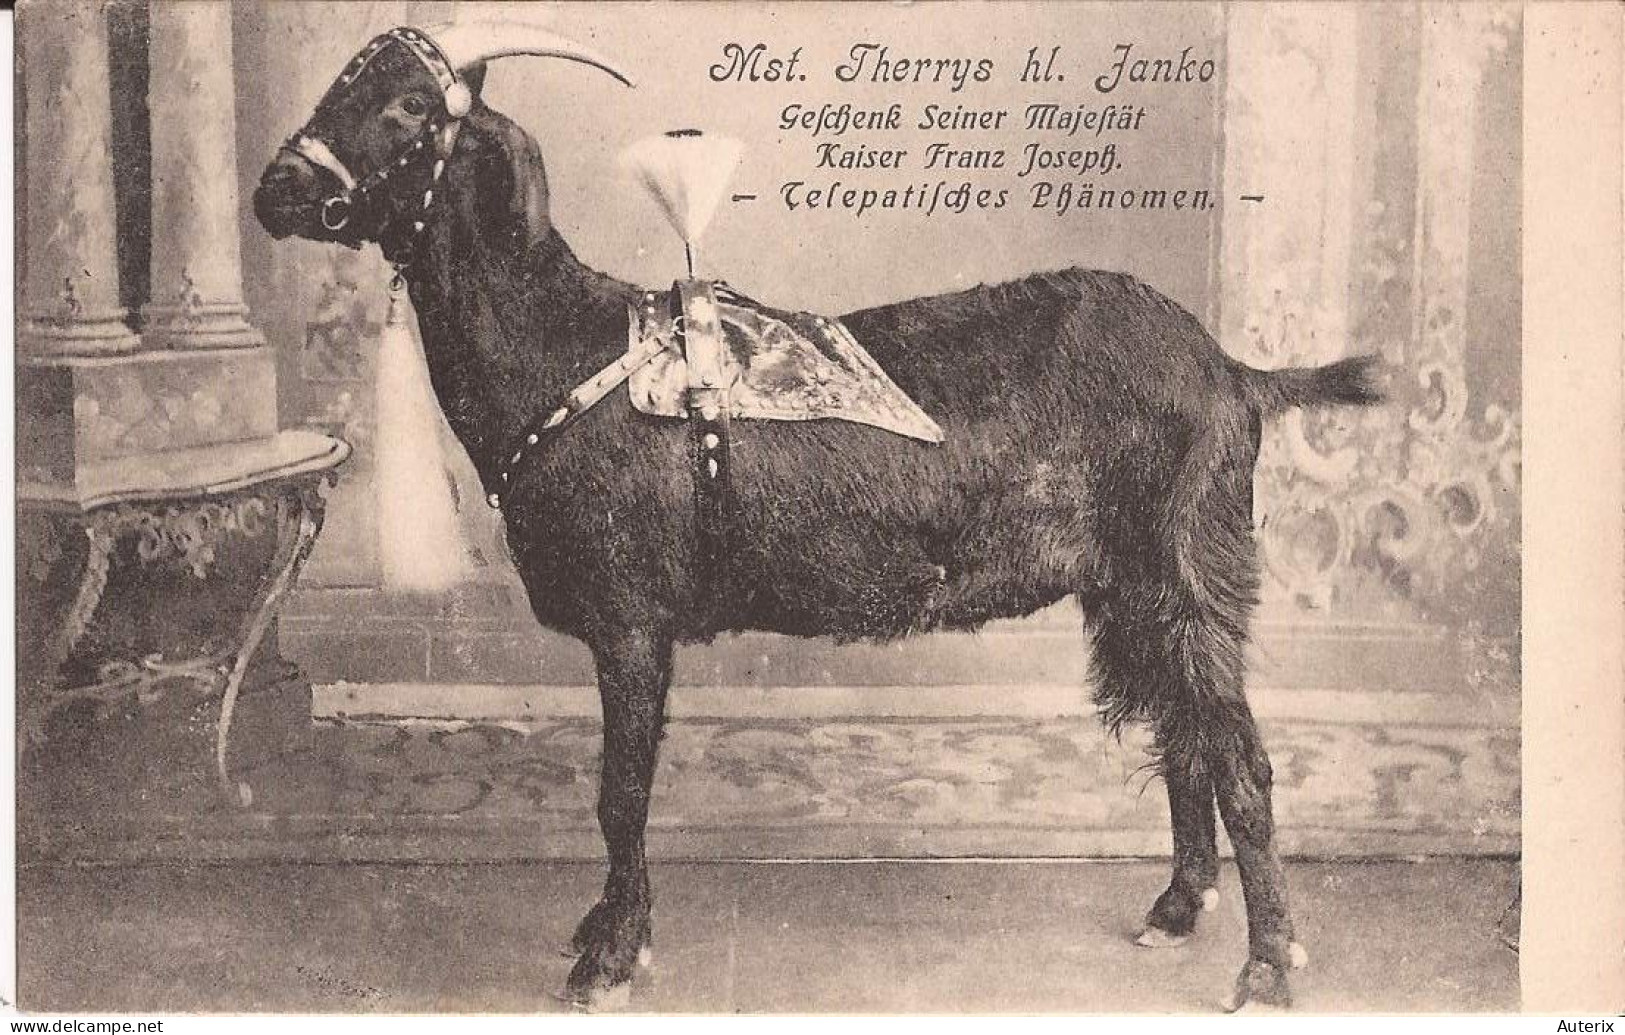 Allemagne - Mst. Therrys Hl. Fanko - Gefchenk Seiner Majeftät Kaiser Franz Joseph - Telepatifches Phänomen Goat - Astrology